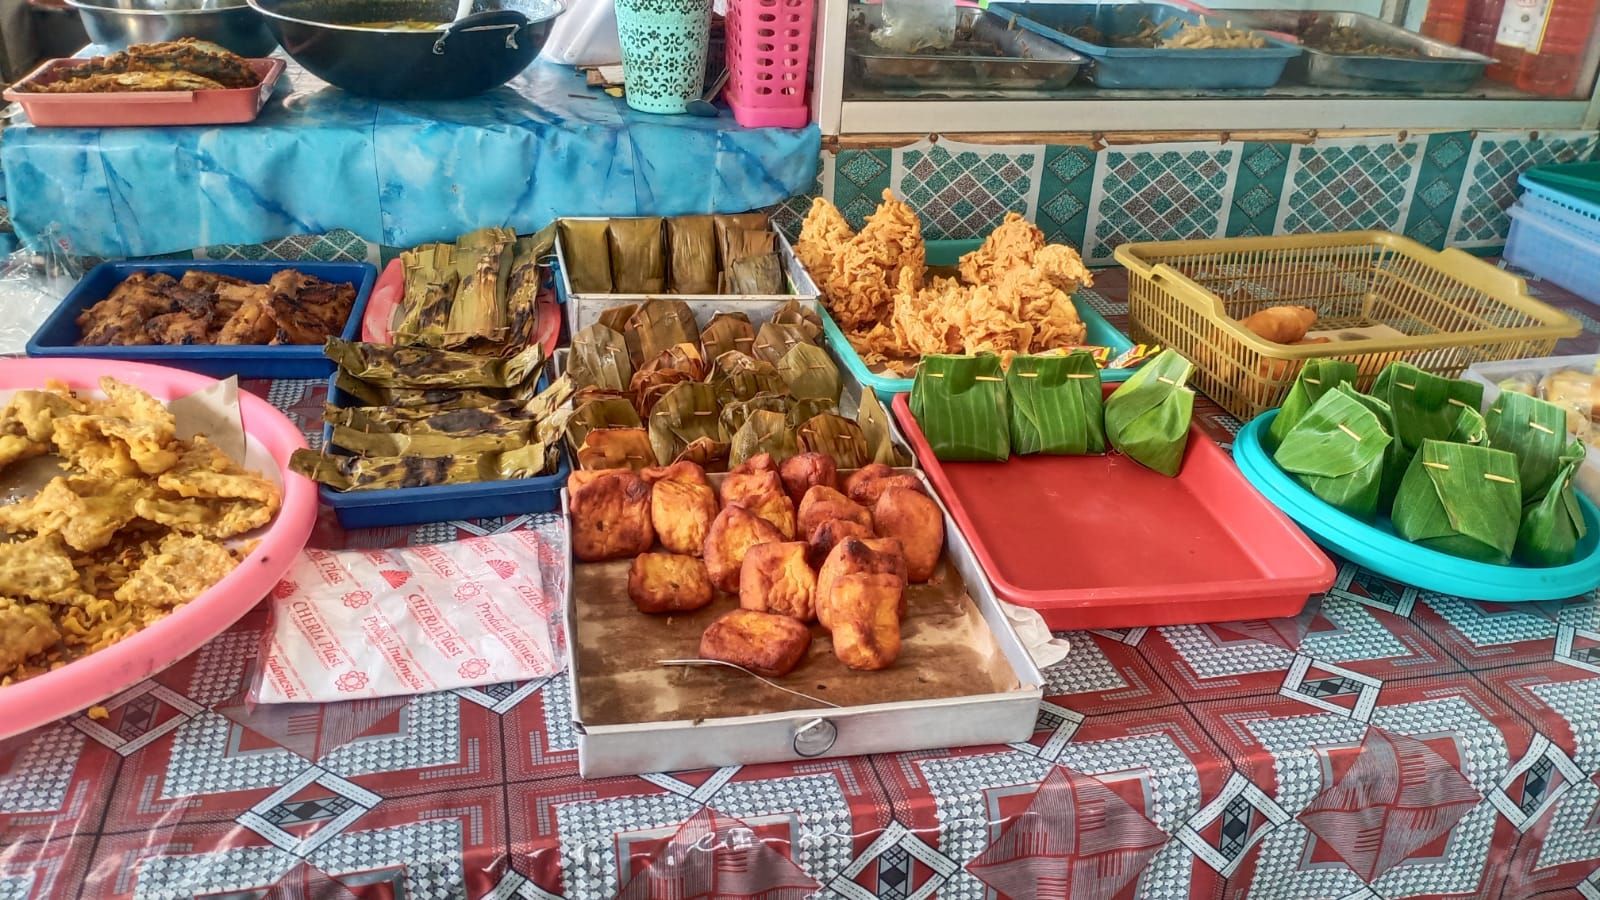 Menu pepes, rica-rica dan gorengan juga tersedia dalam bentuk bungkus daun di warung Mak Mar.